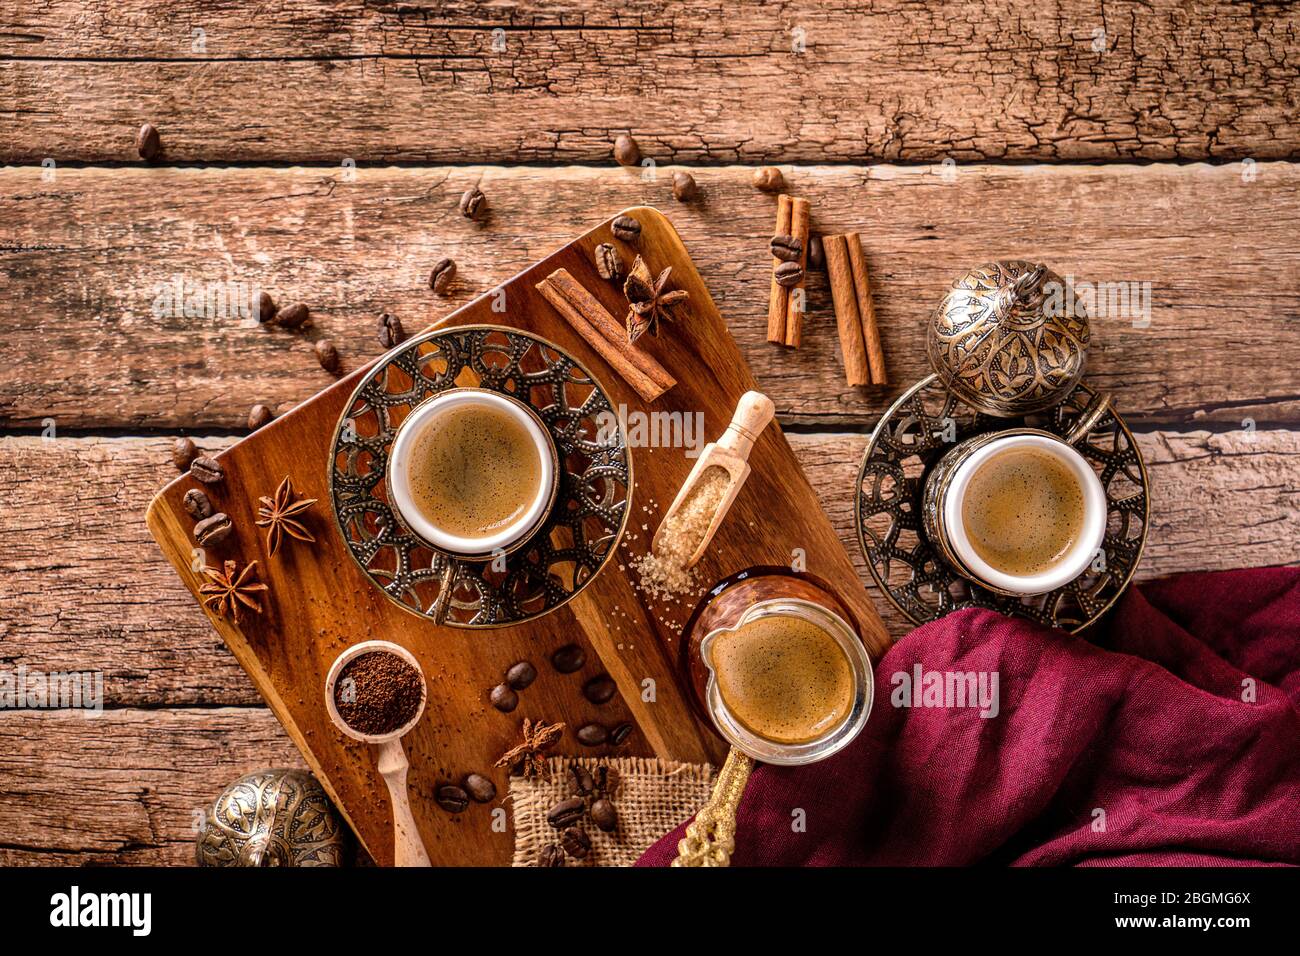 Vista superior de tazas de café, frijoles y especias en una mesa de café de madera Foto de stock